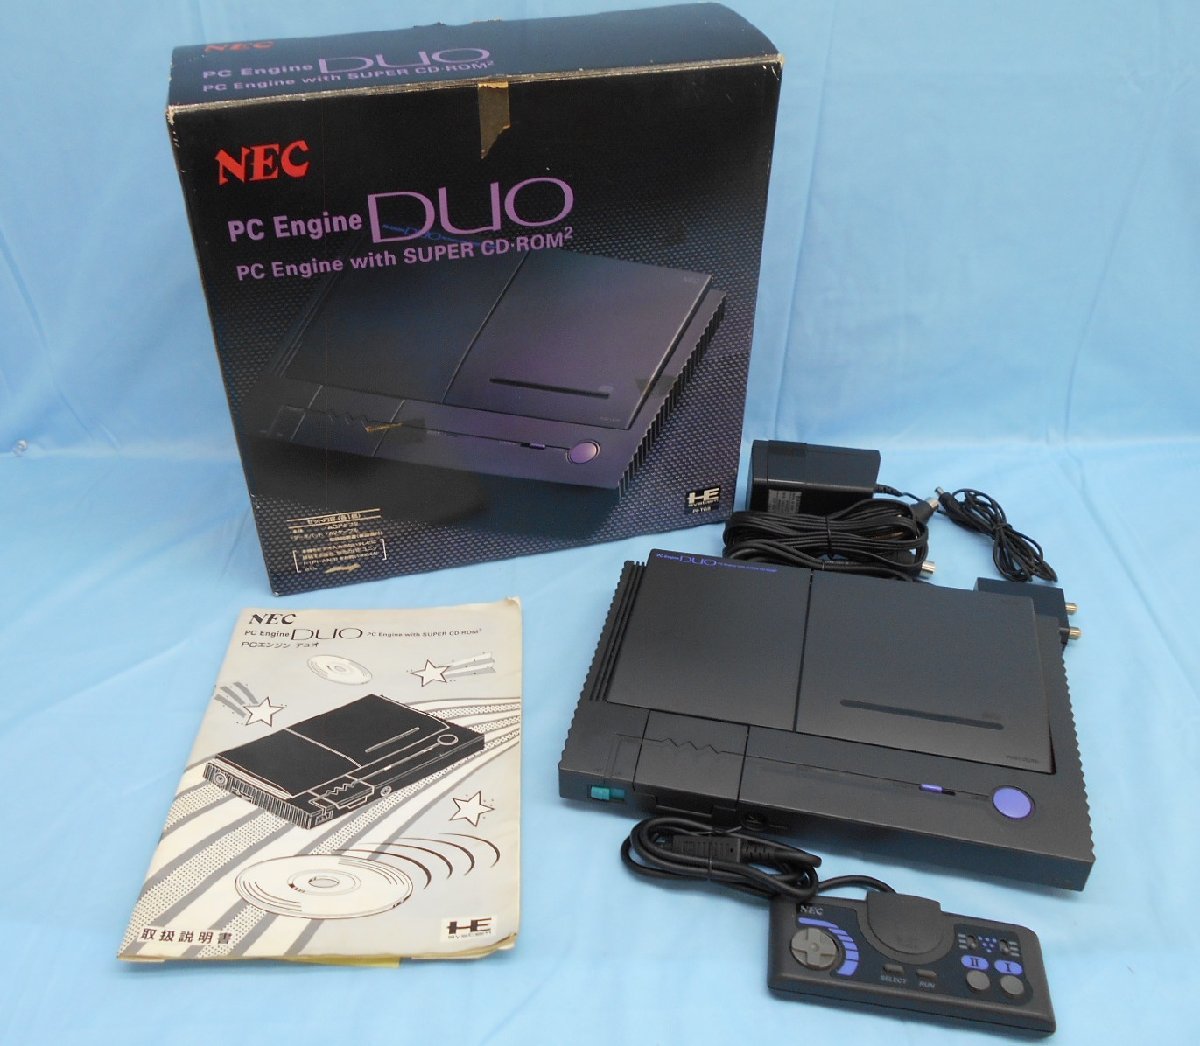 ゲーム機 NEC PI-TG8 PC Engine DUO PCエンジン コントローラー付 ※ジャンク - clicvendas.com